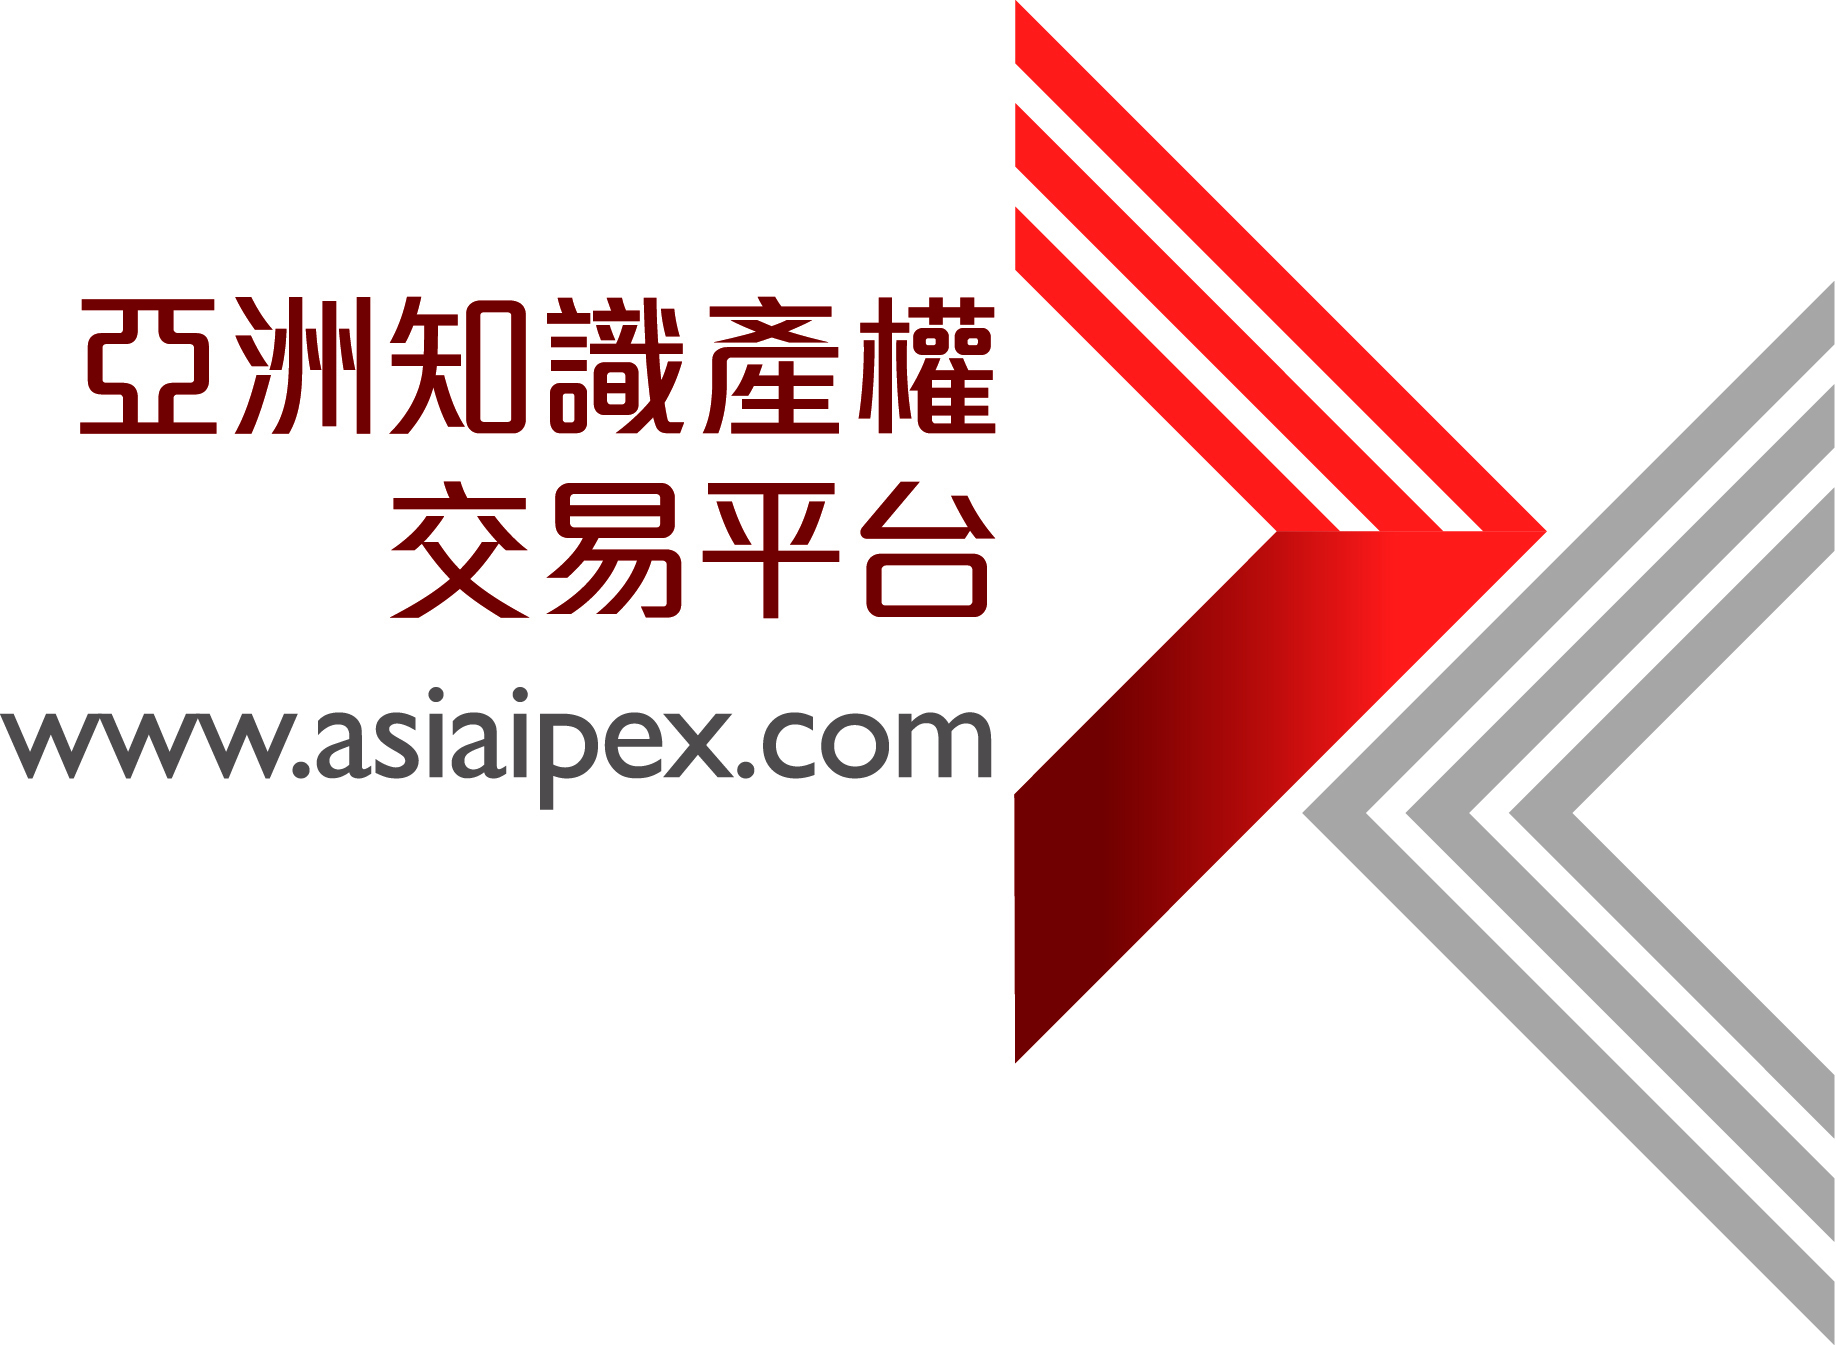 亚洲知识产权交易平台 (AsiaIPEX) - 推出免费知识产权实用指南